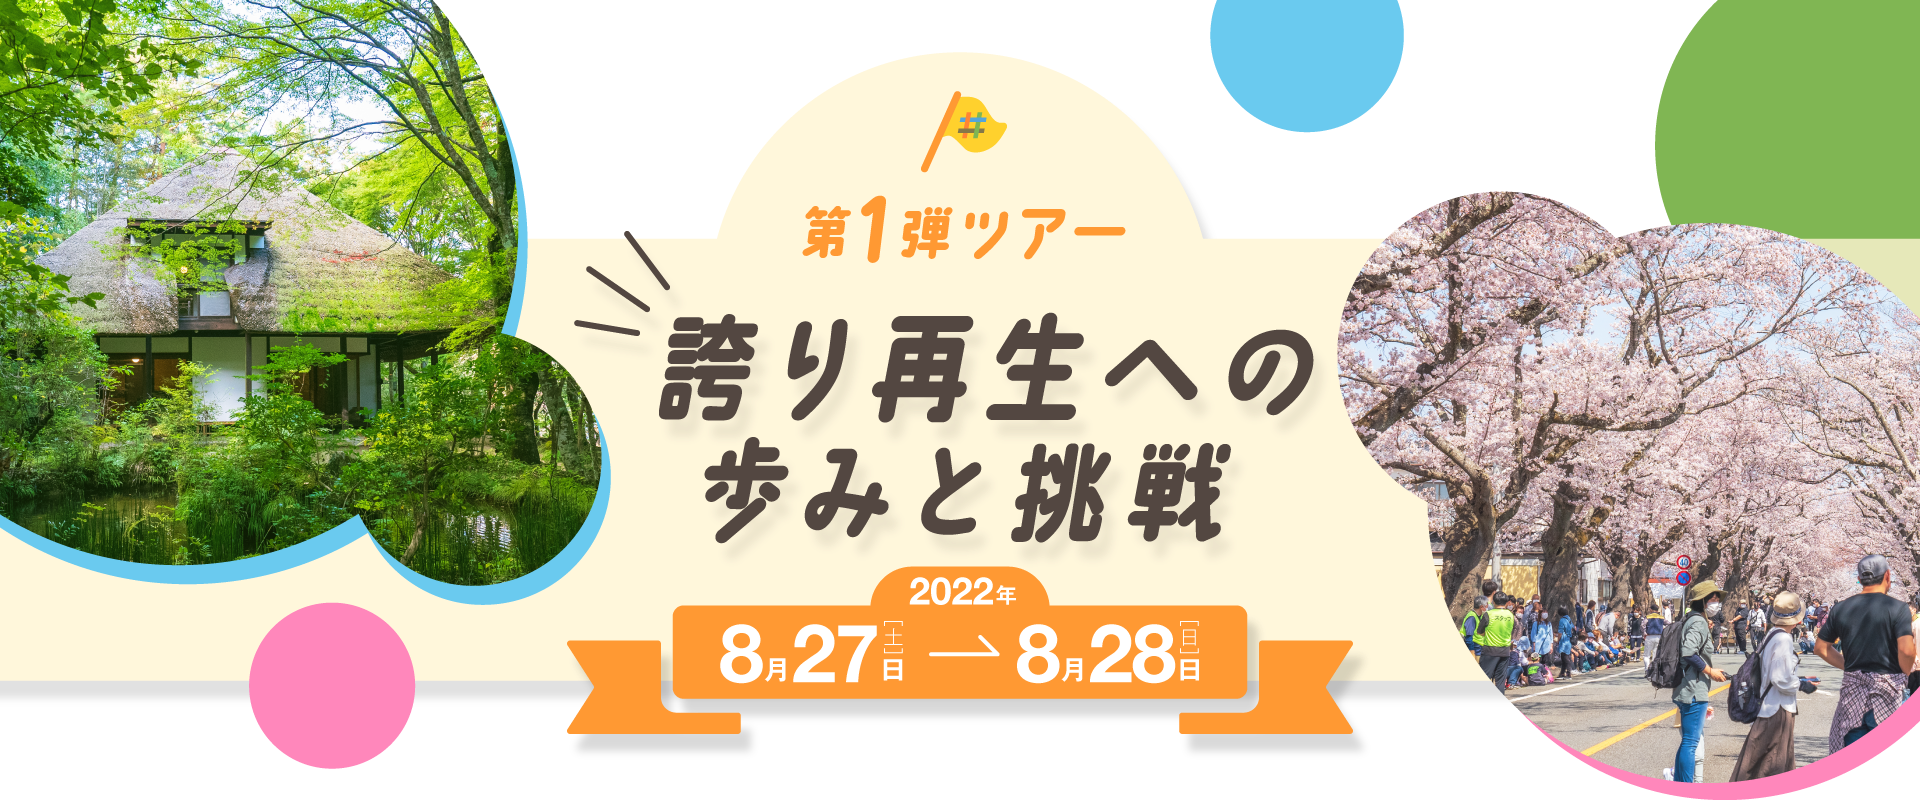 福島移住体験ツアー第1弾 誇り再生への歩みと挑戦